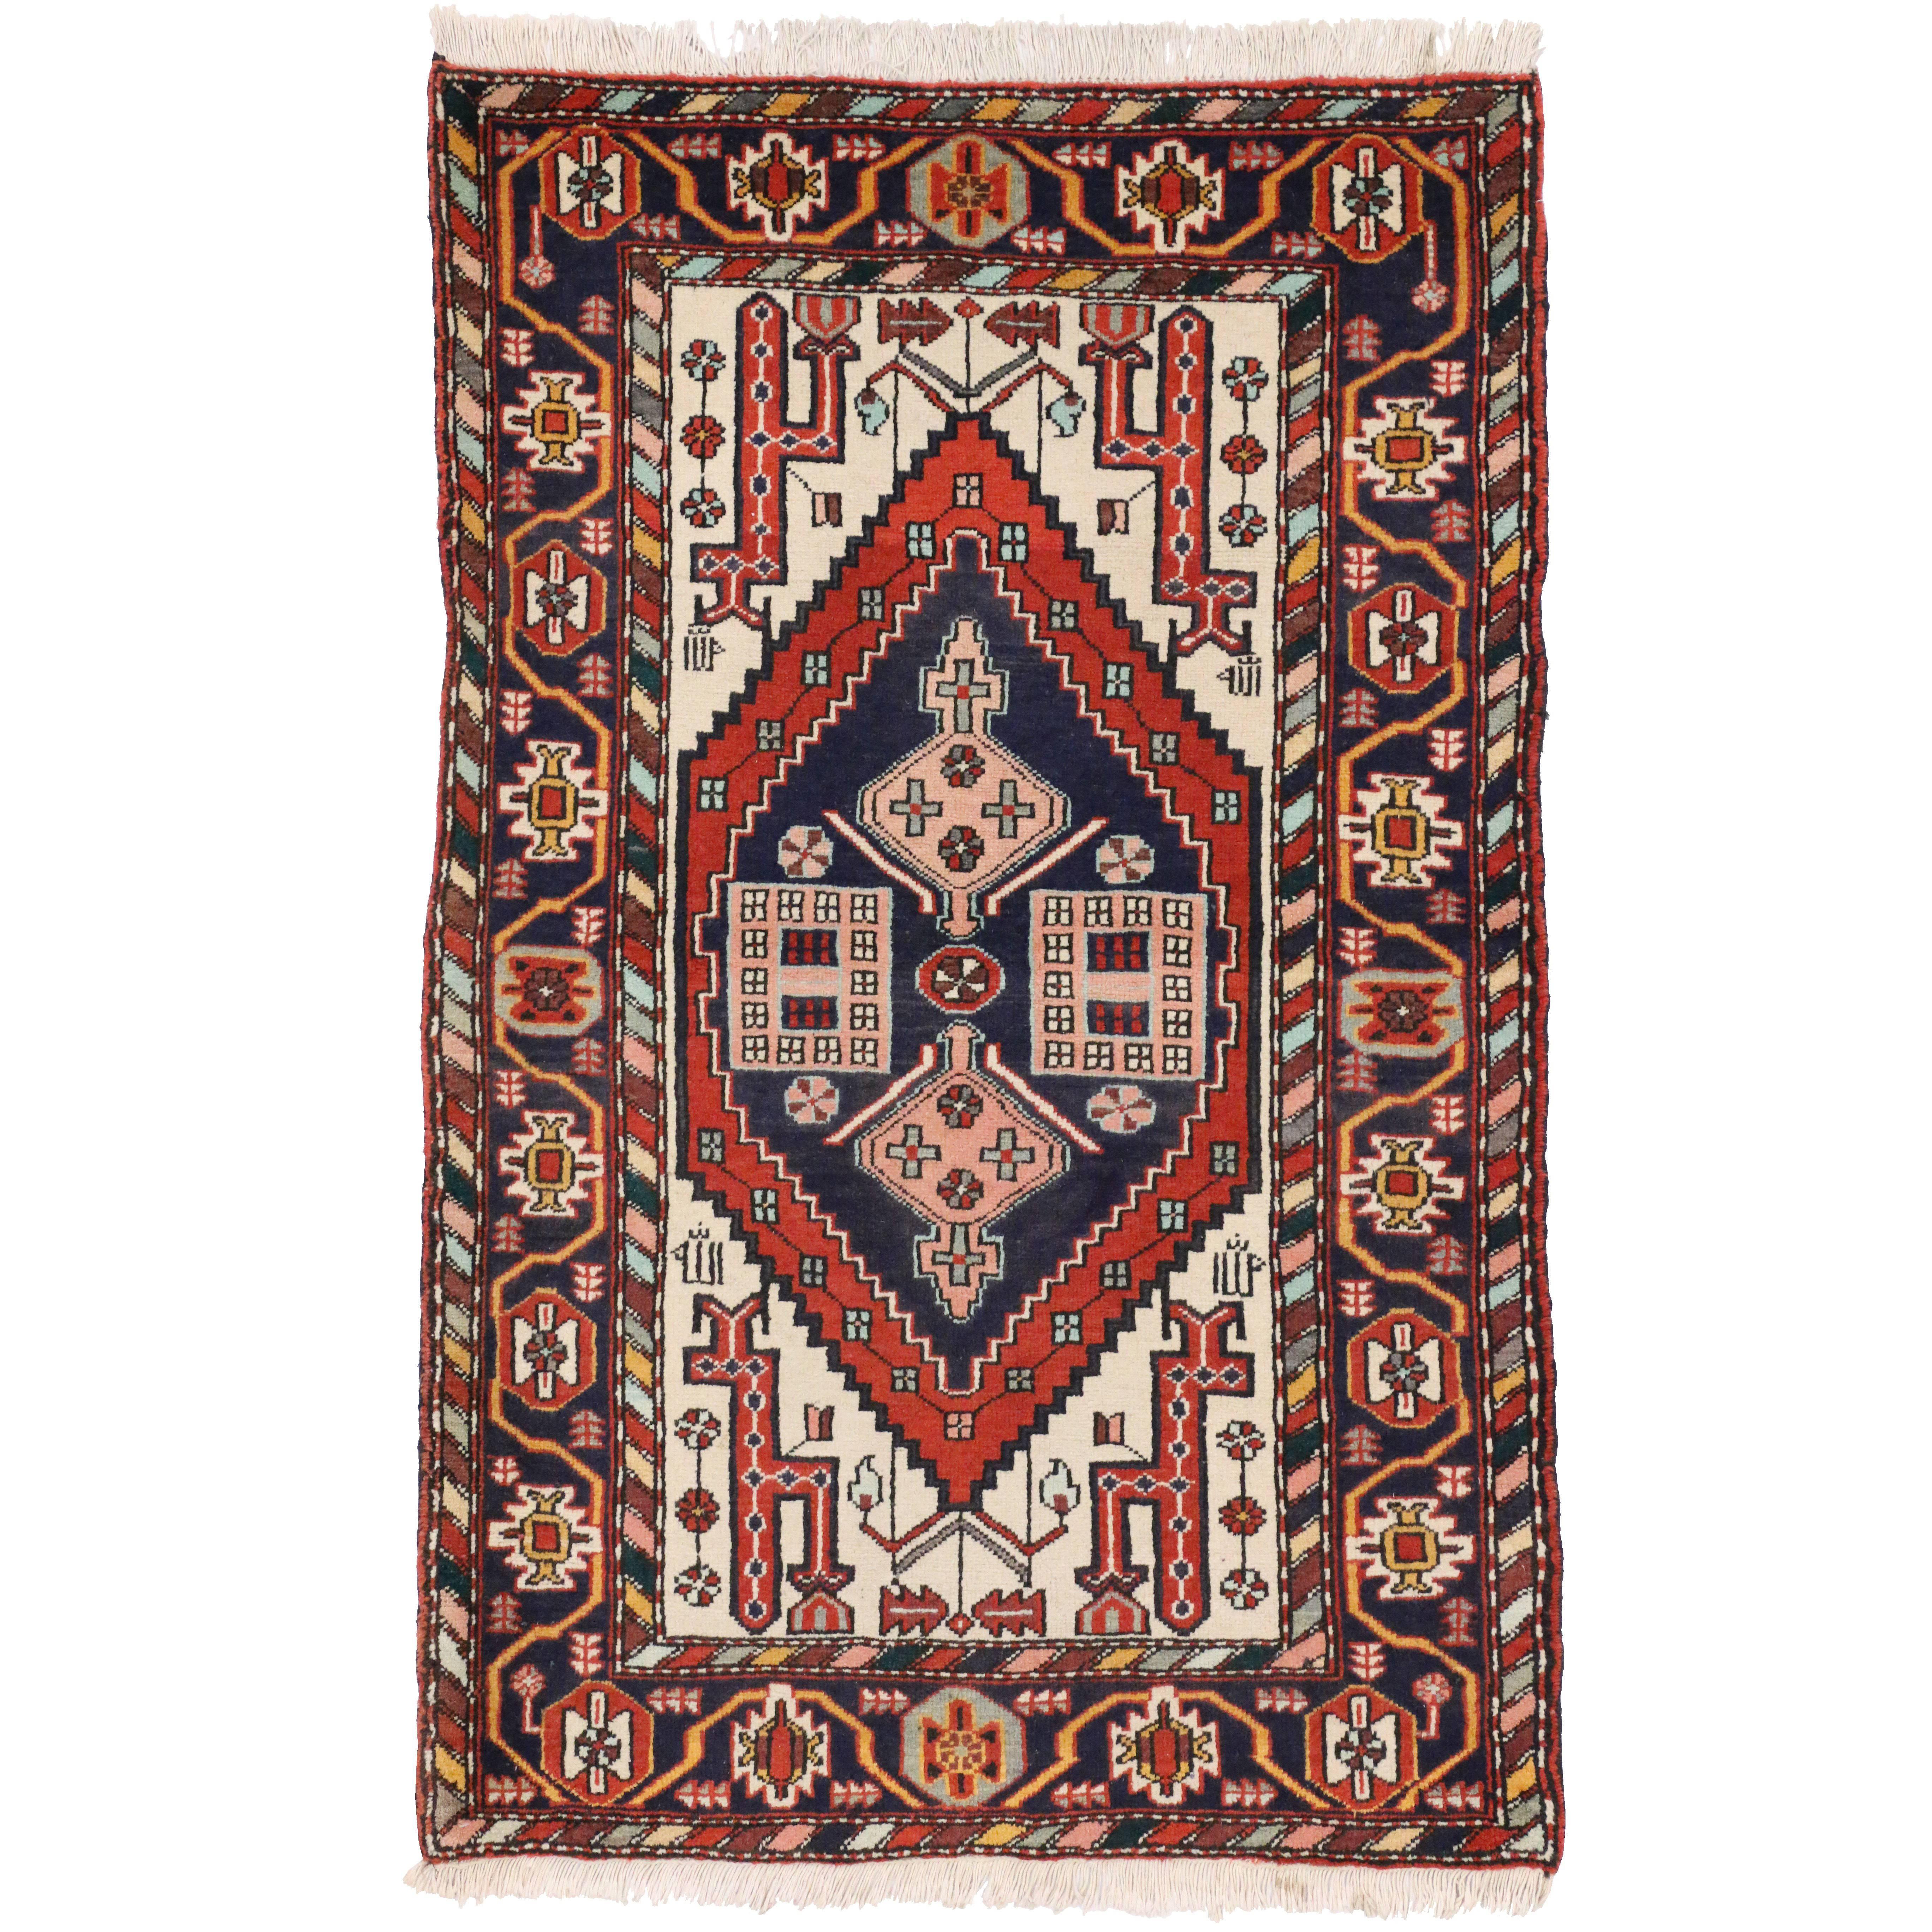 Tapis persan Heriz vintage de style tribal moderne et de couleurs traditionnelles